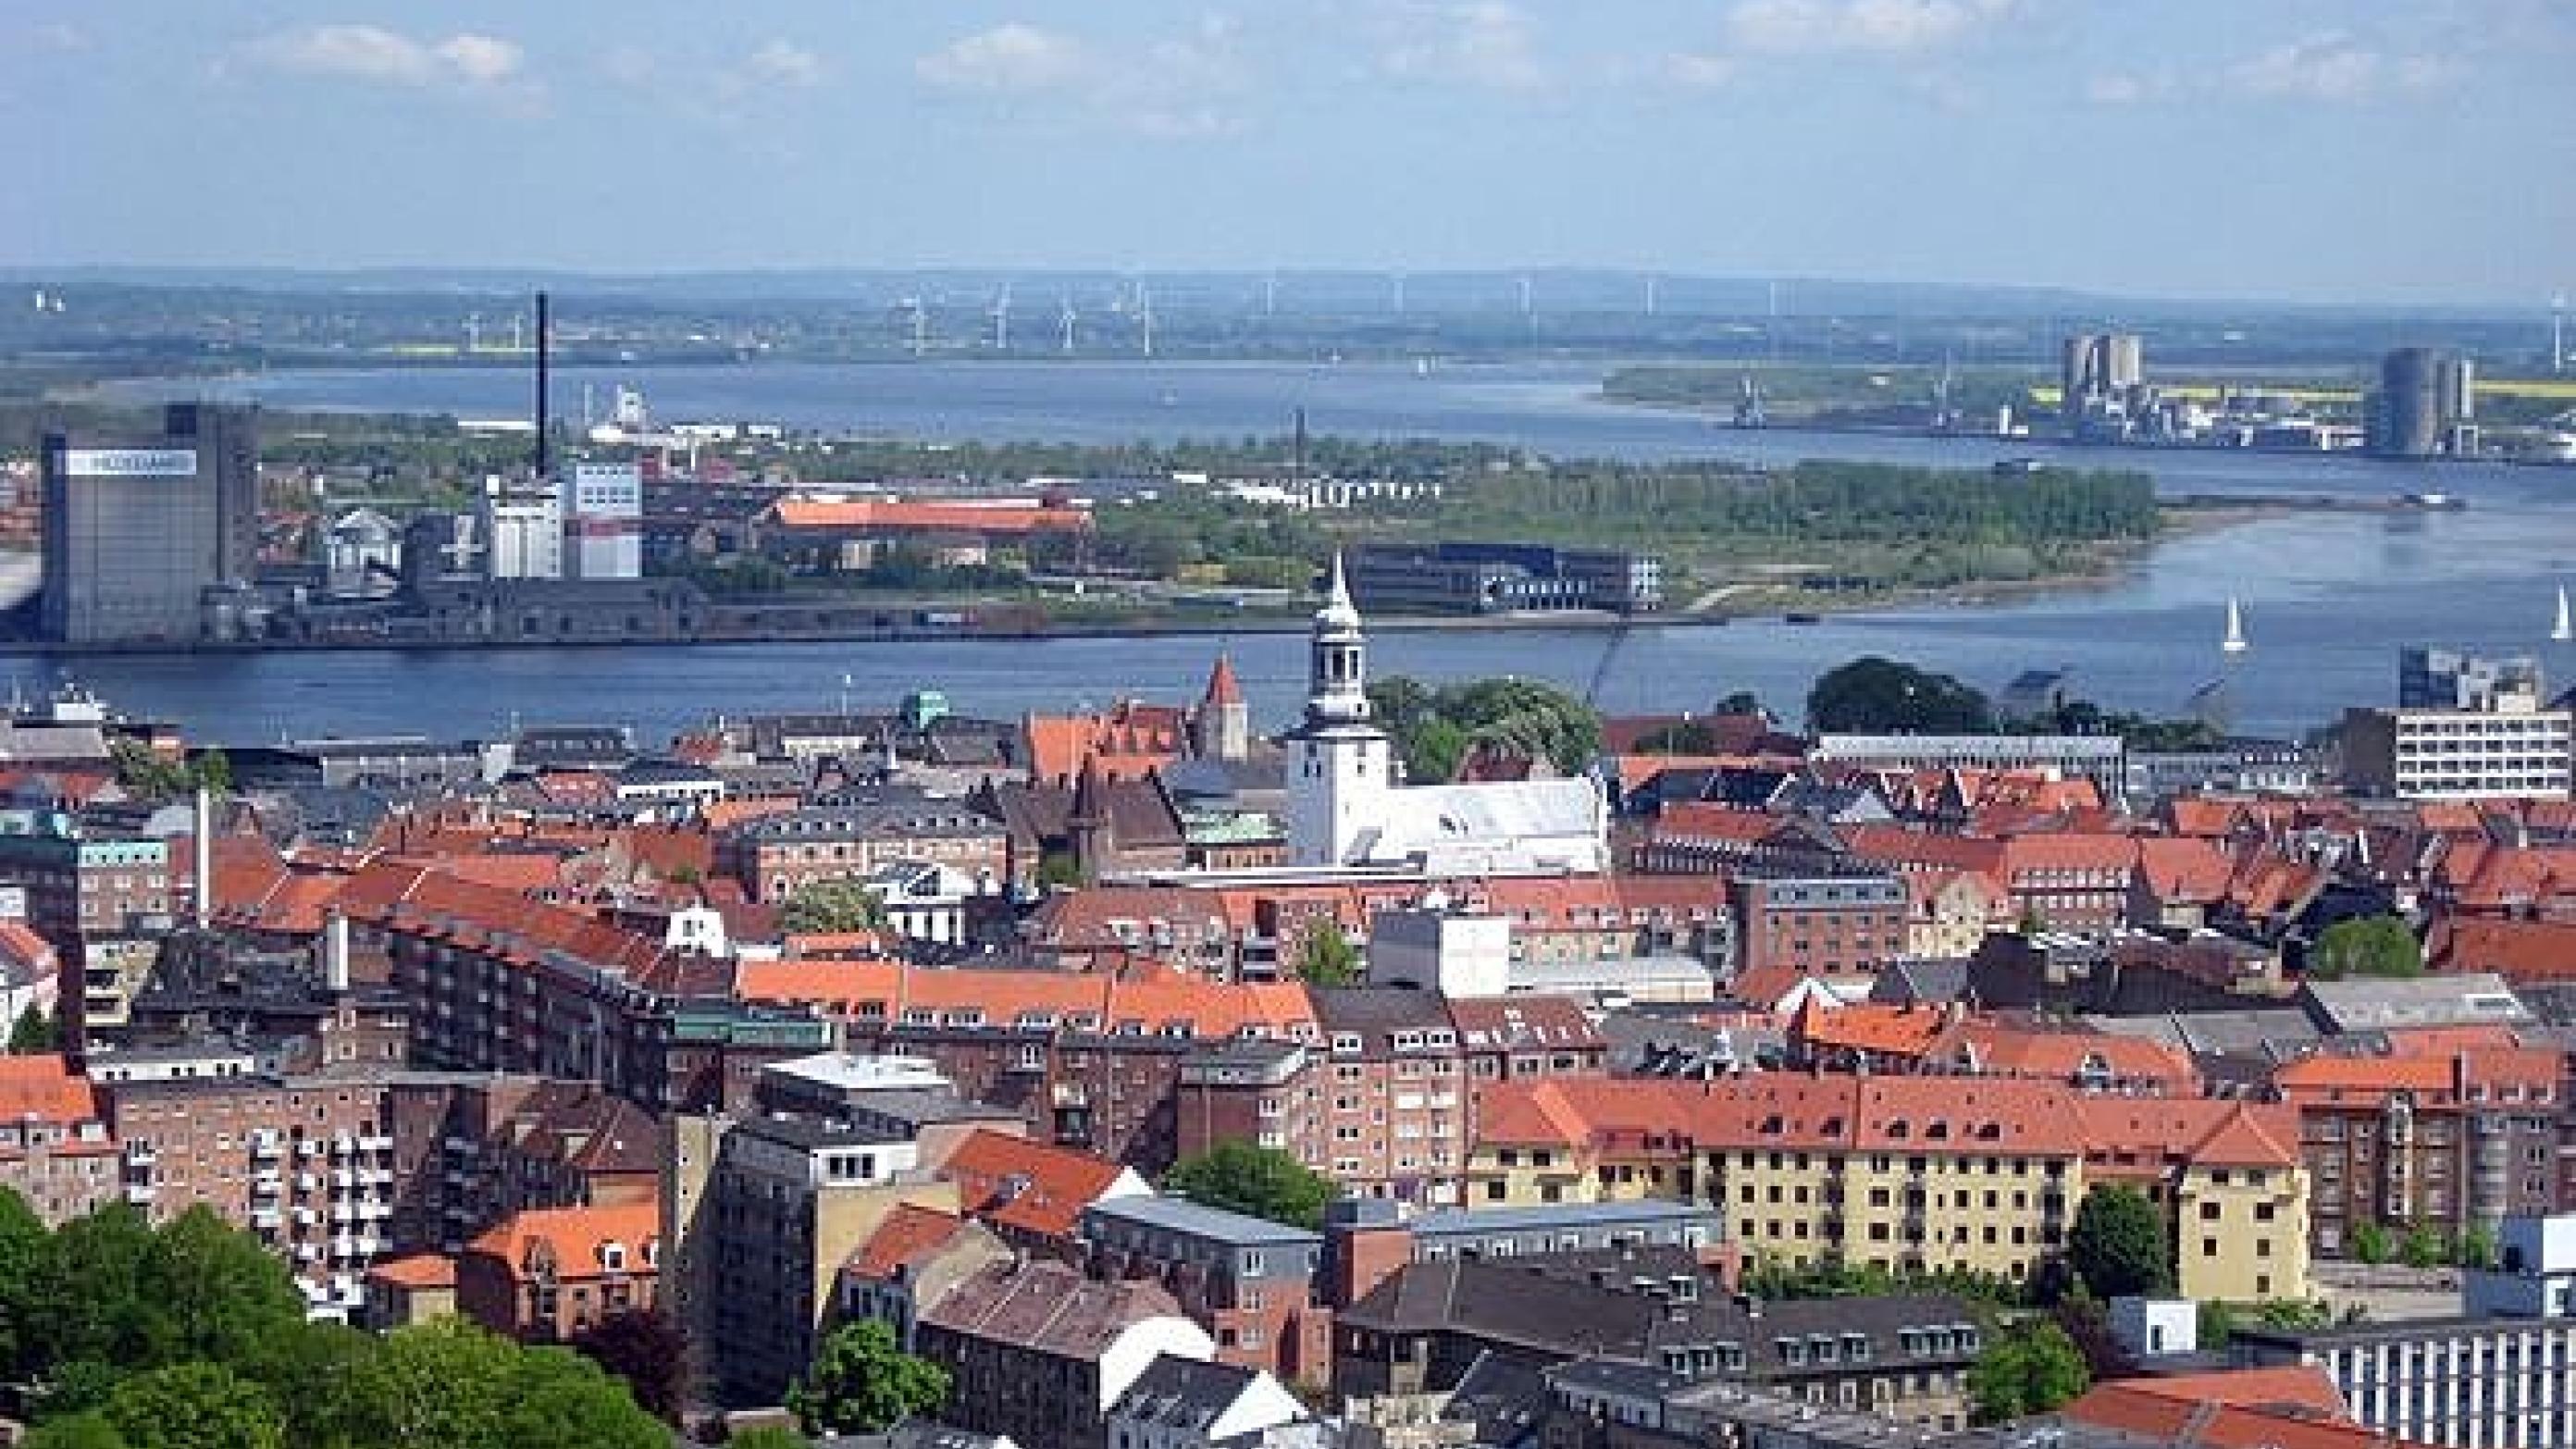 Billedtekst: Selv større byer som Aalborg har problemer med lægedækning – selv i byens centrum. Foto: Wikimedia/Tomasz Sienicki